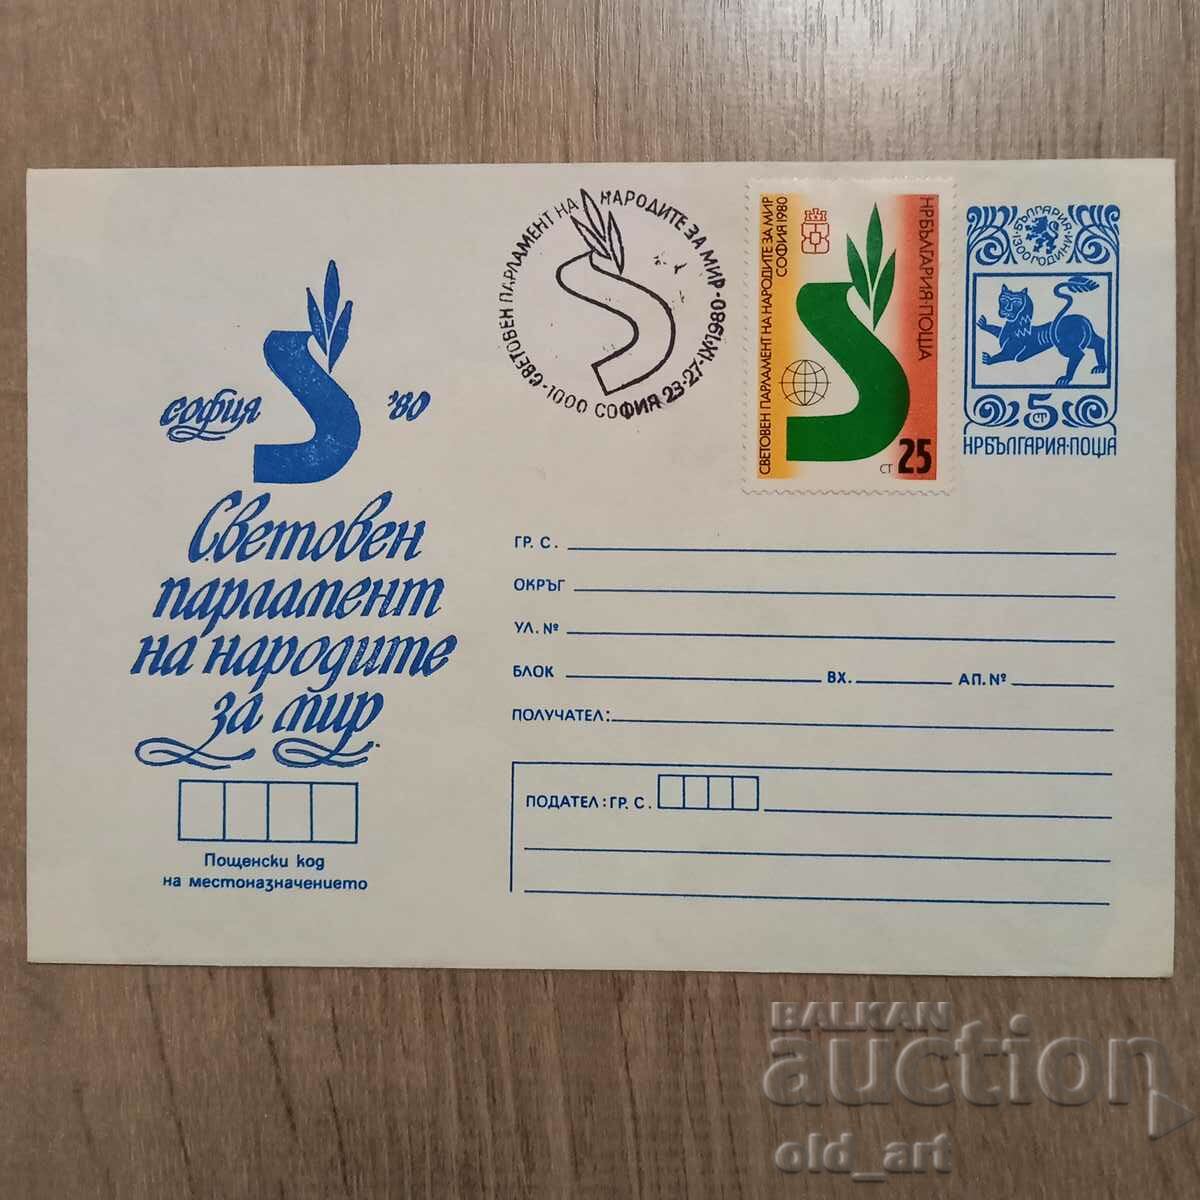 Пощенски плик - Св. парламент на народите за мир